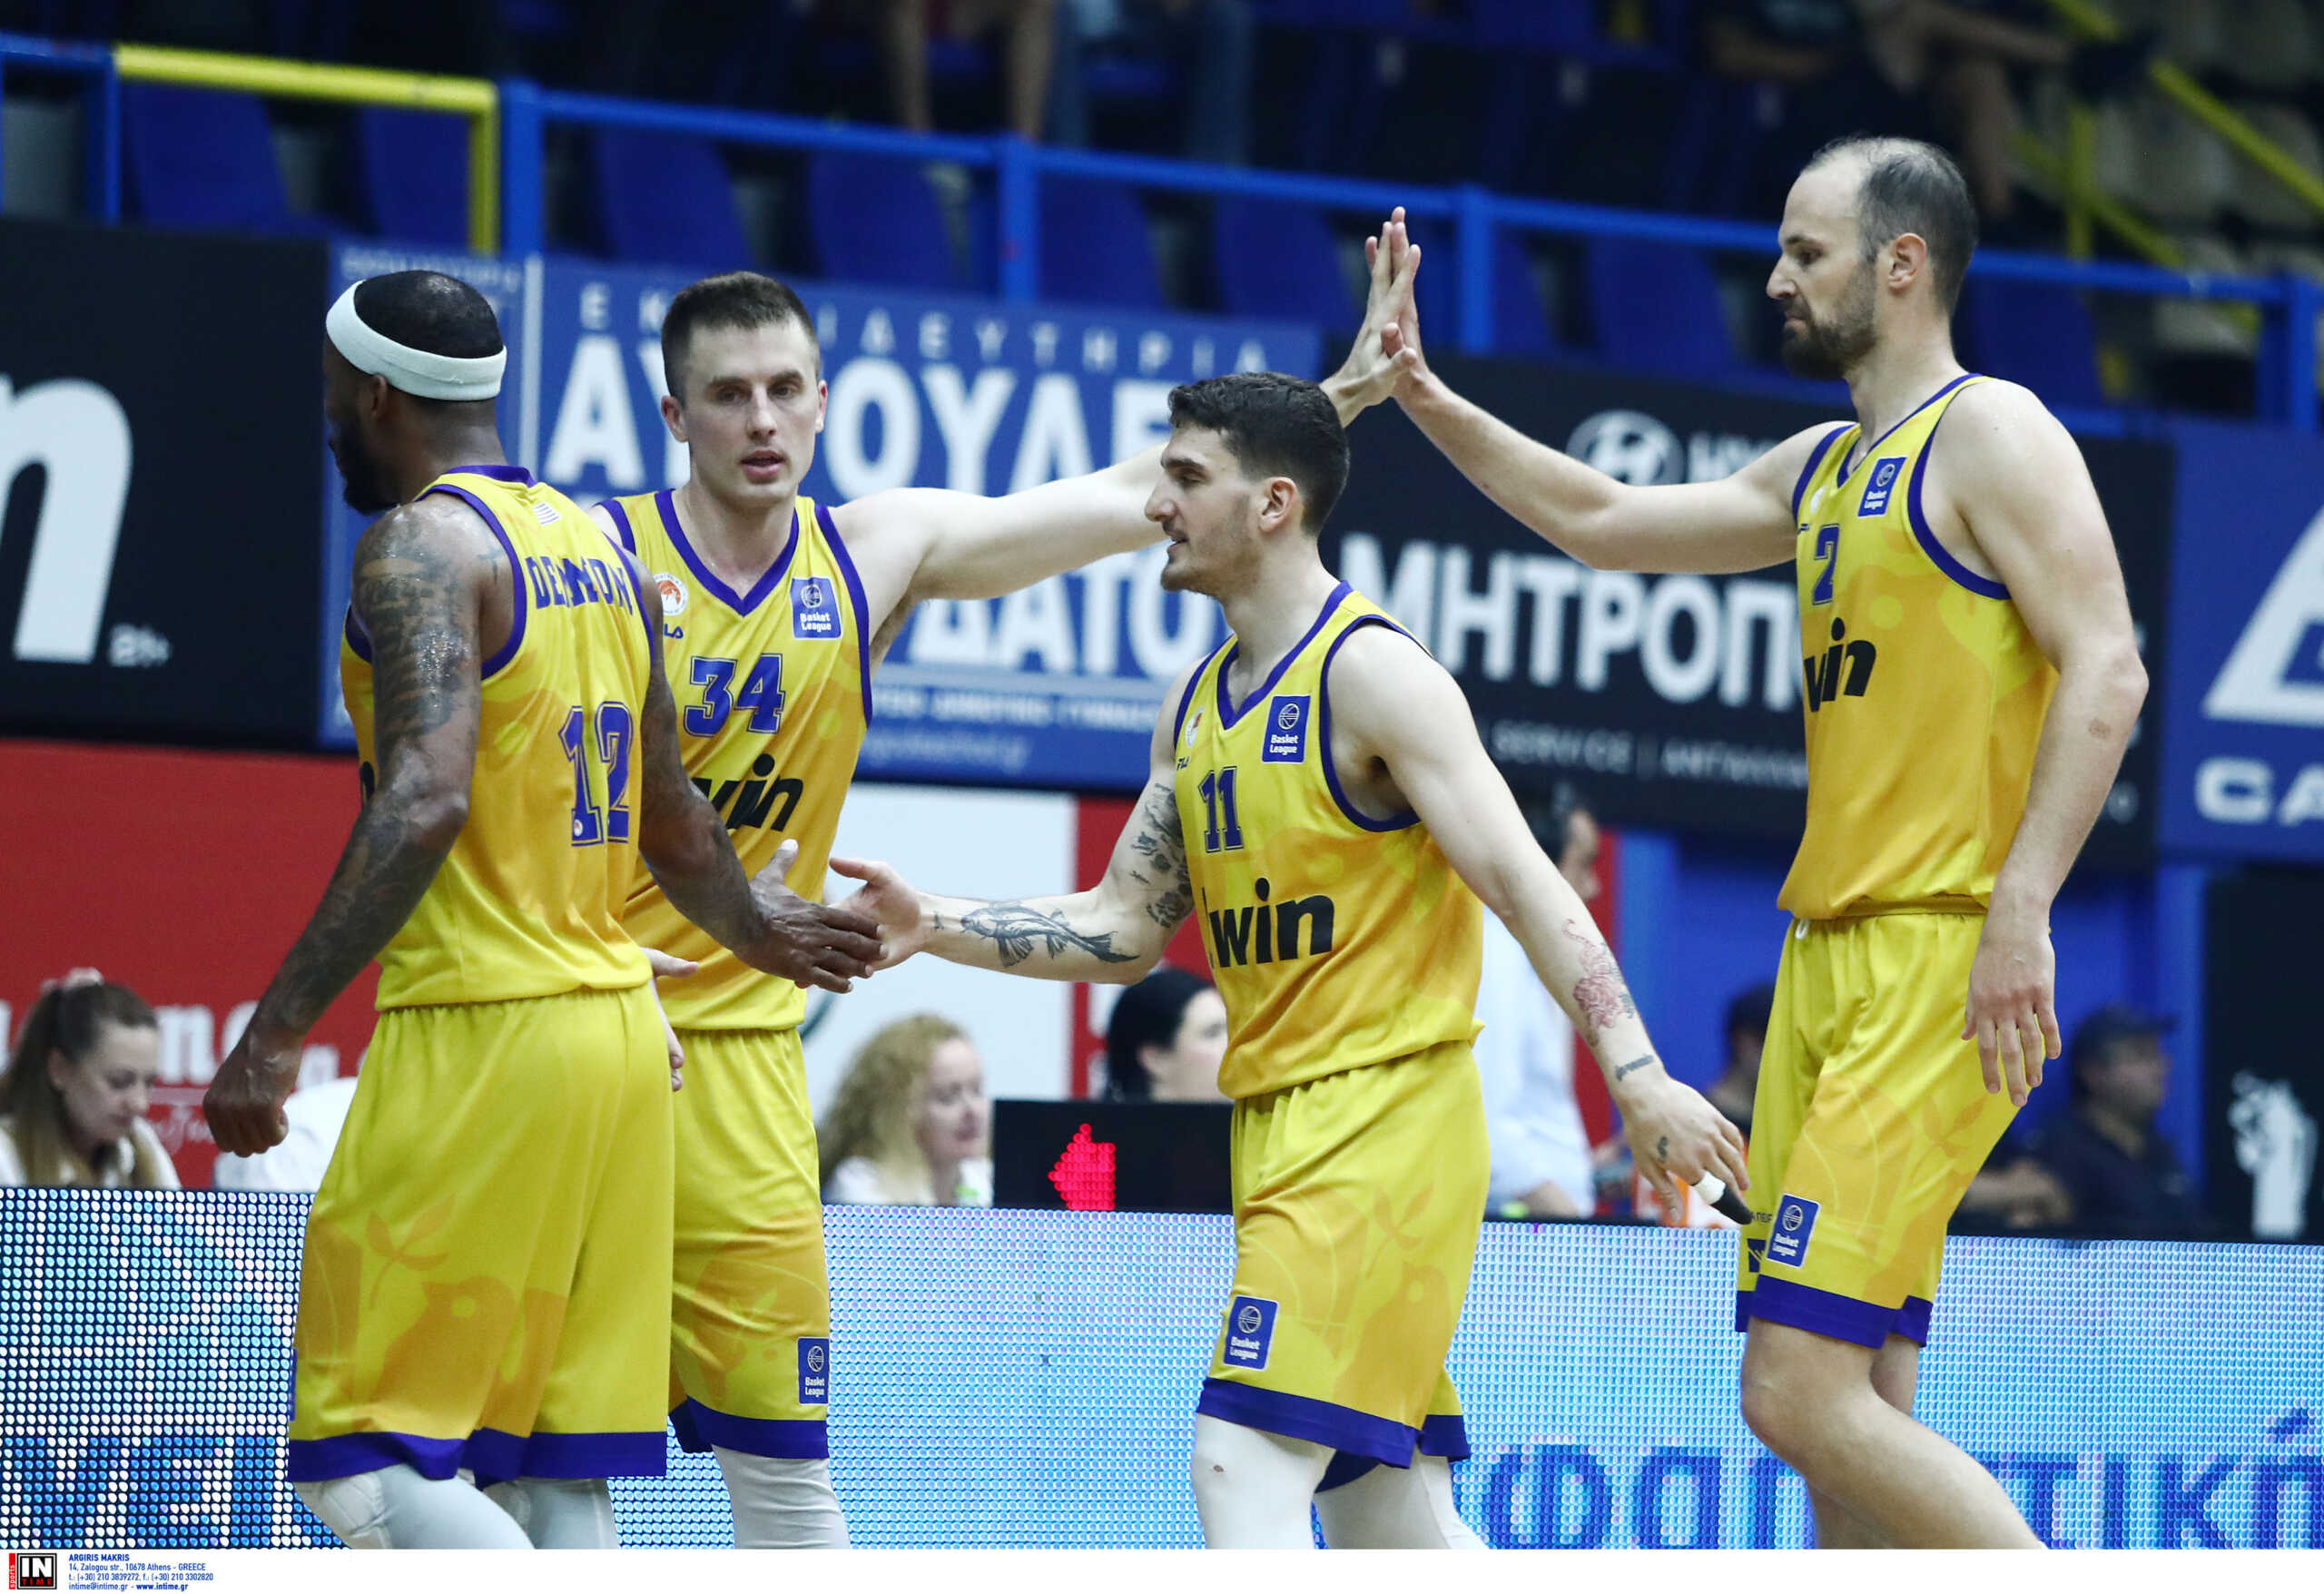 Περιστέρι – ΠΑΟΚ 73-51: Η ομάδα του Βασίλη Σπανούλη κατέλαβε την τρίτη θέση στη Basket League